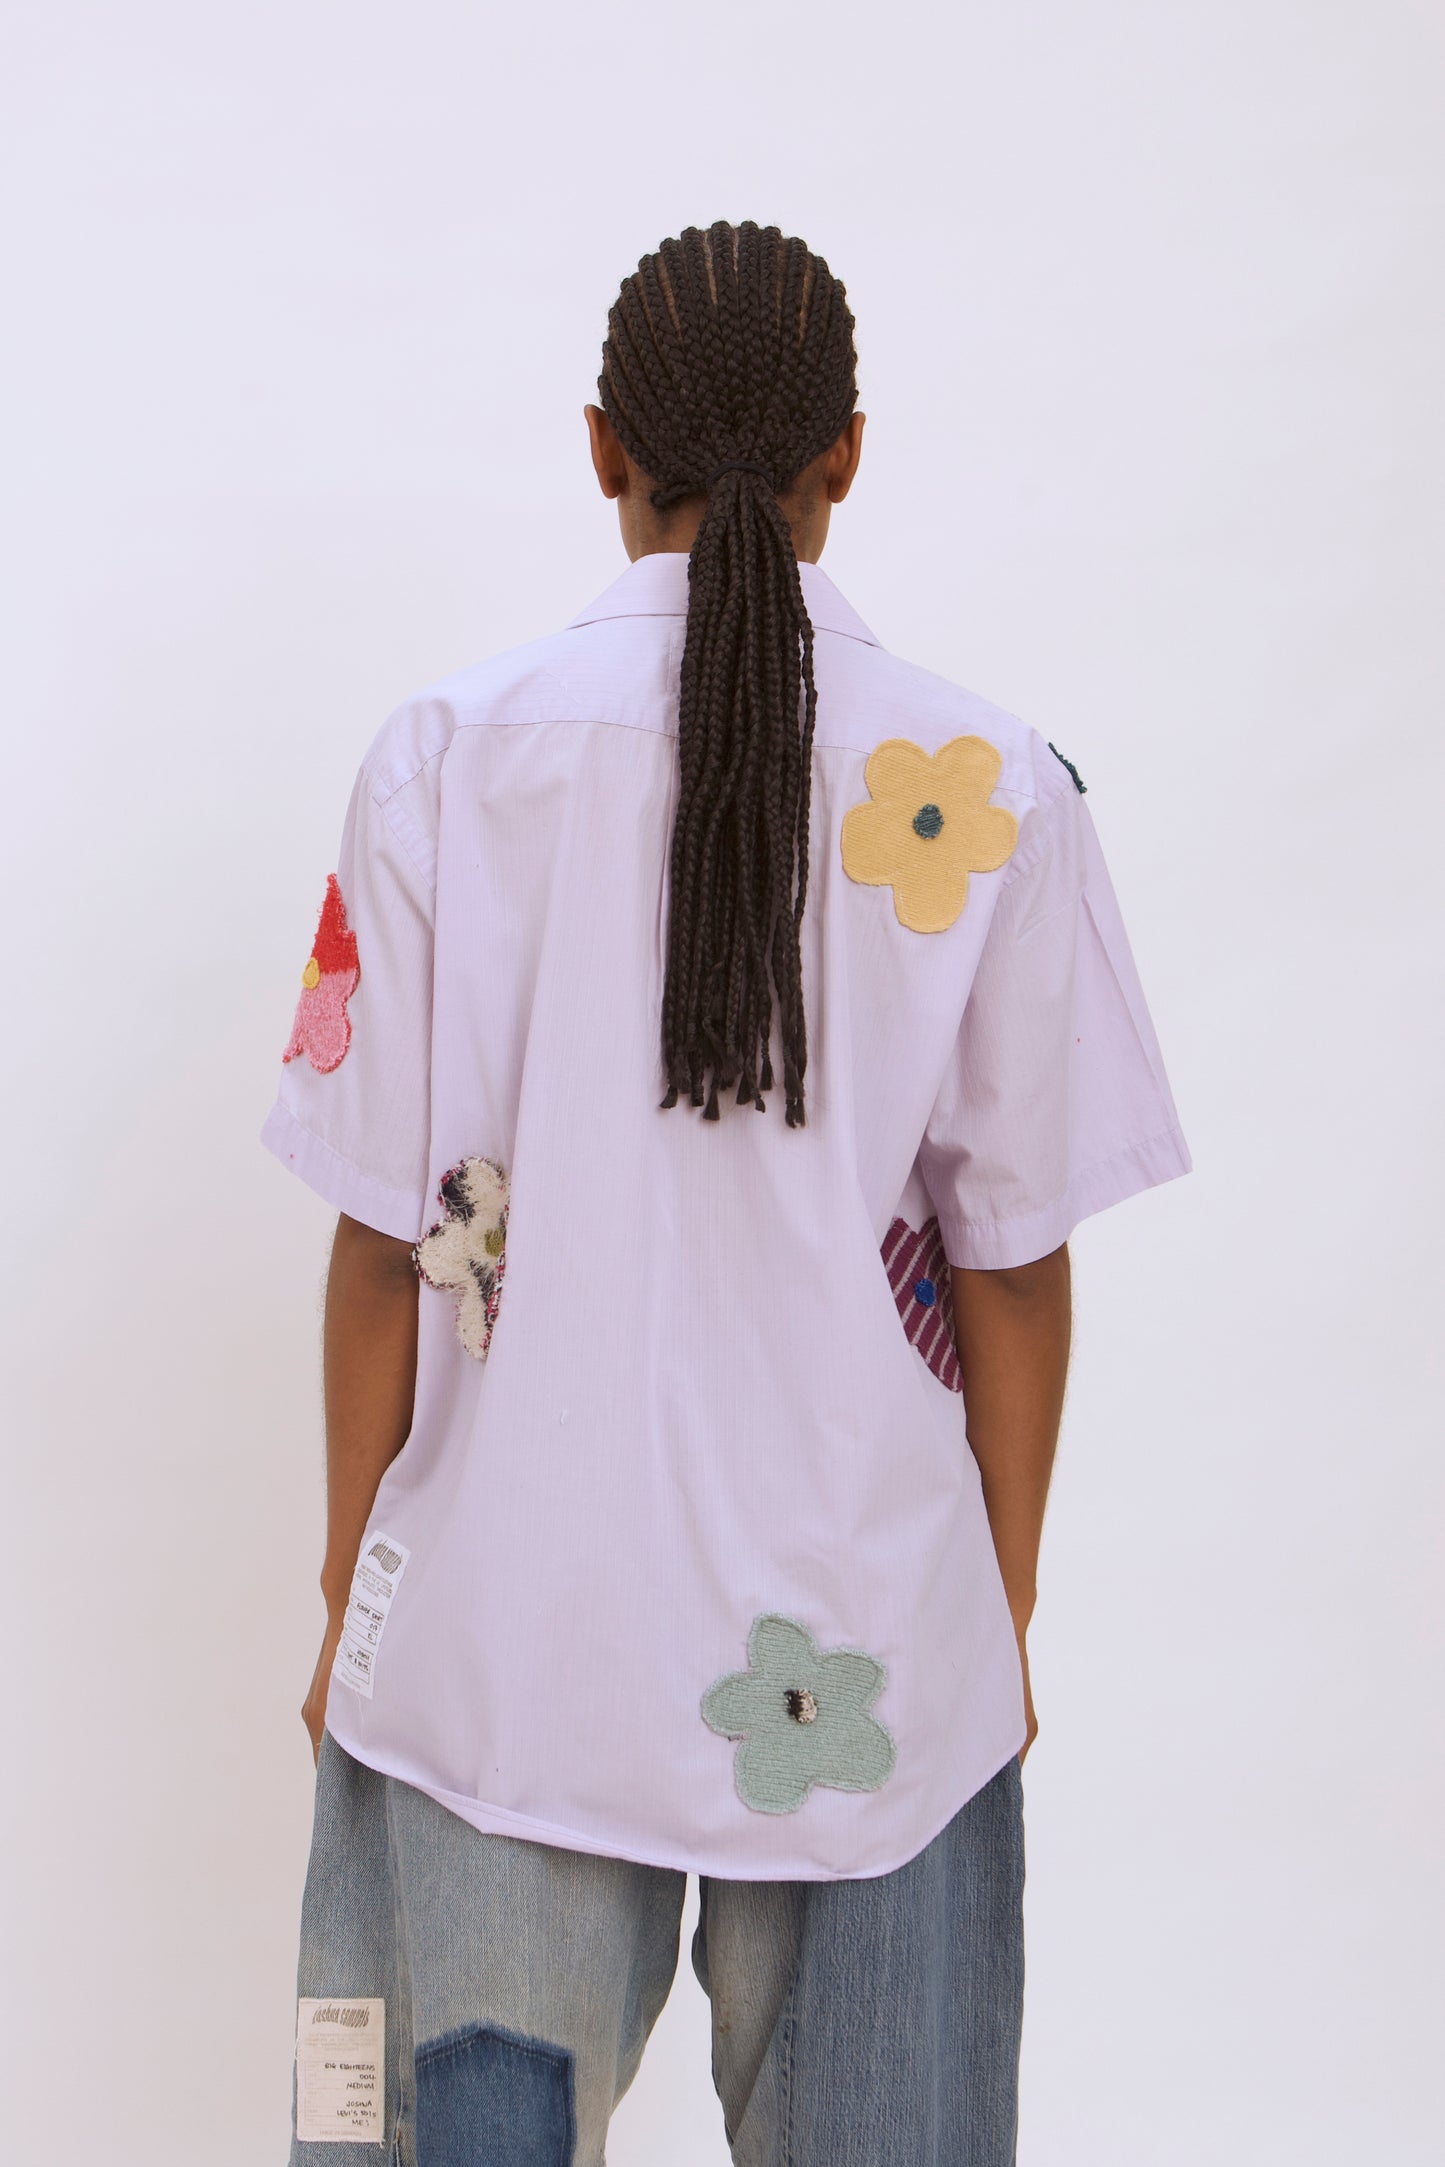 Flower Shirt 017 - XL